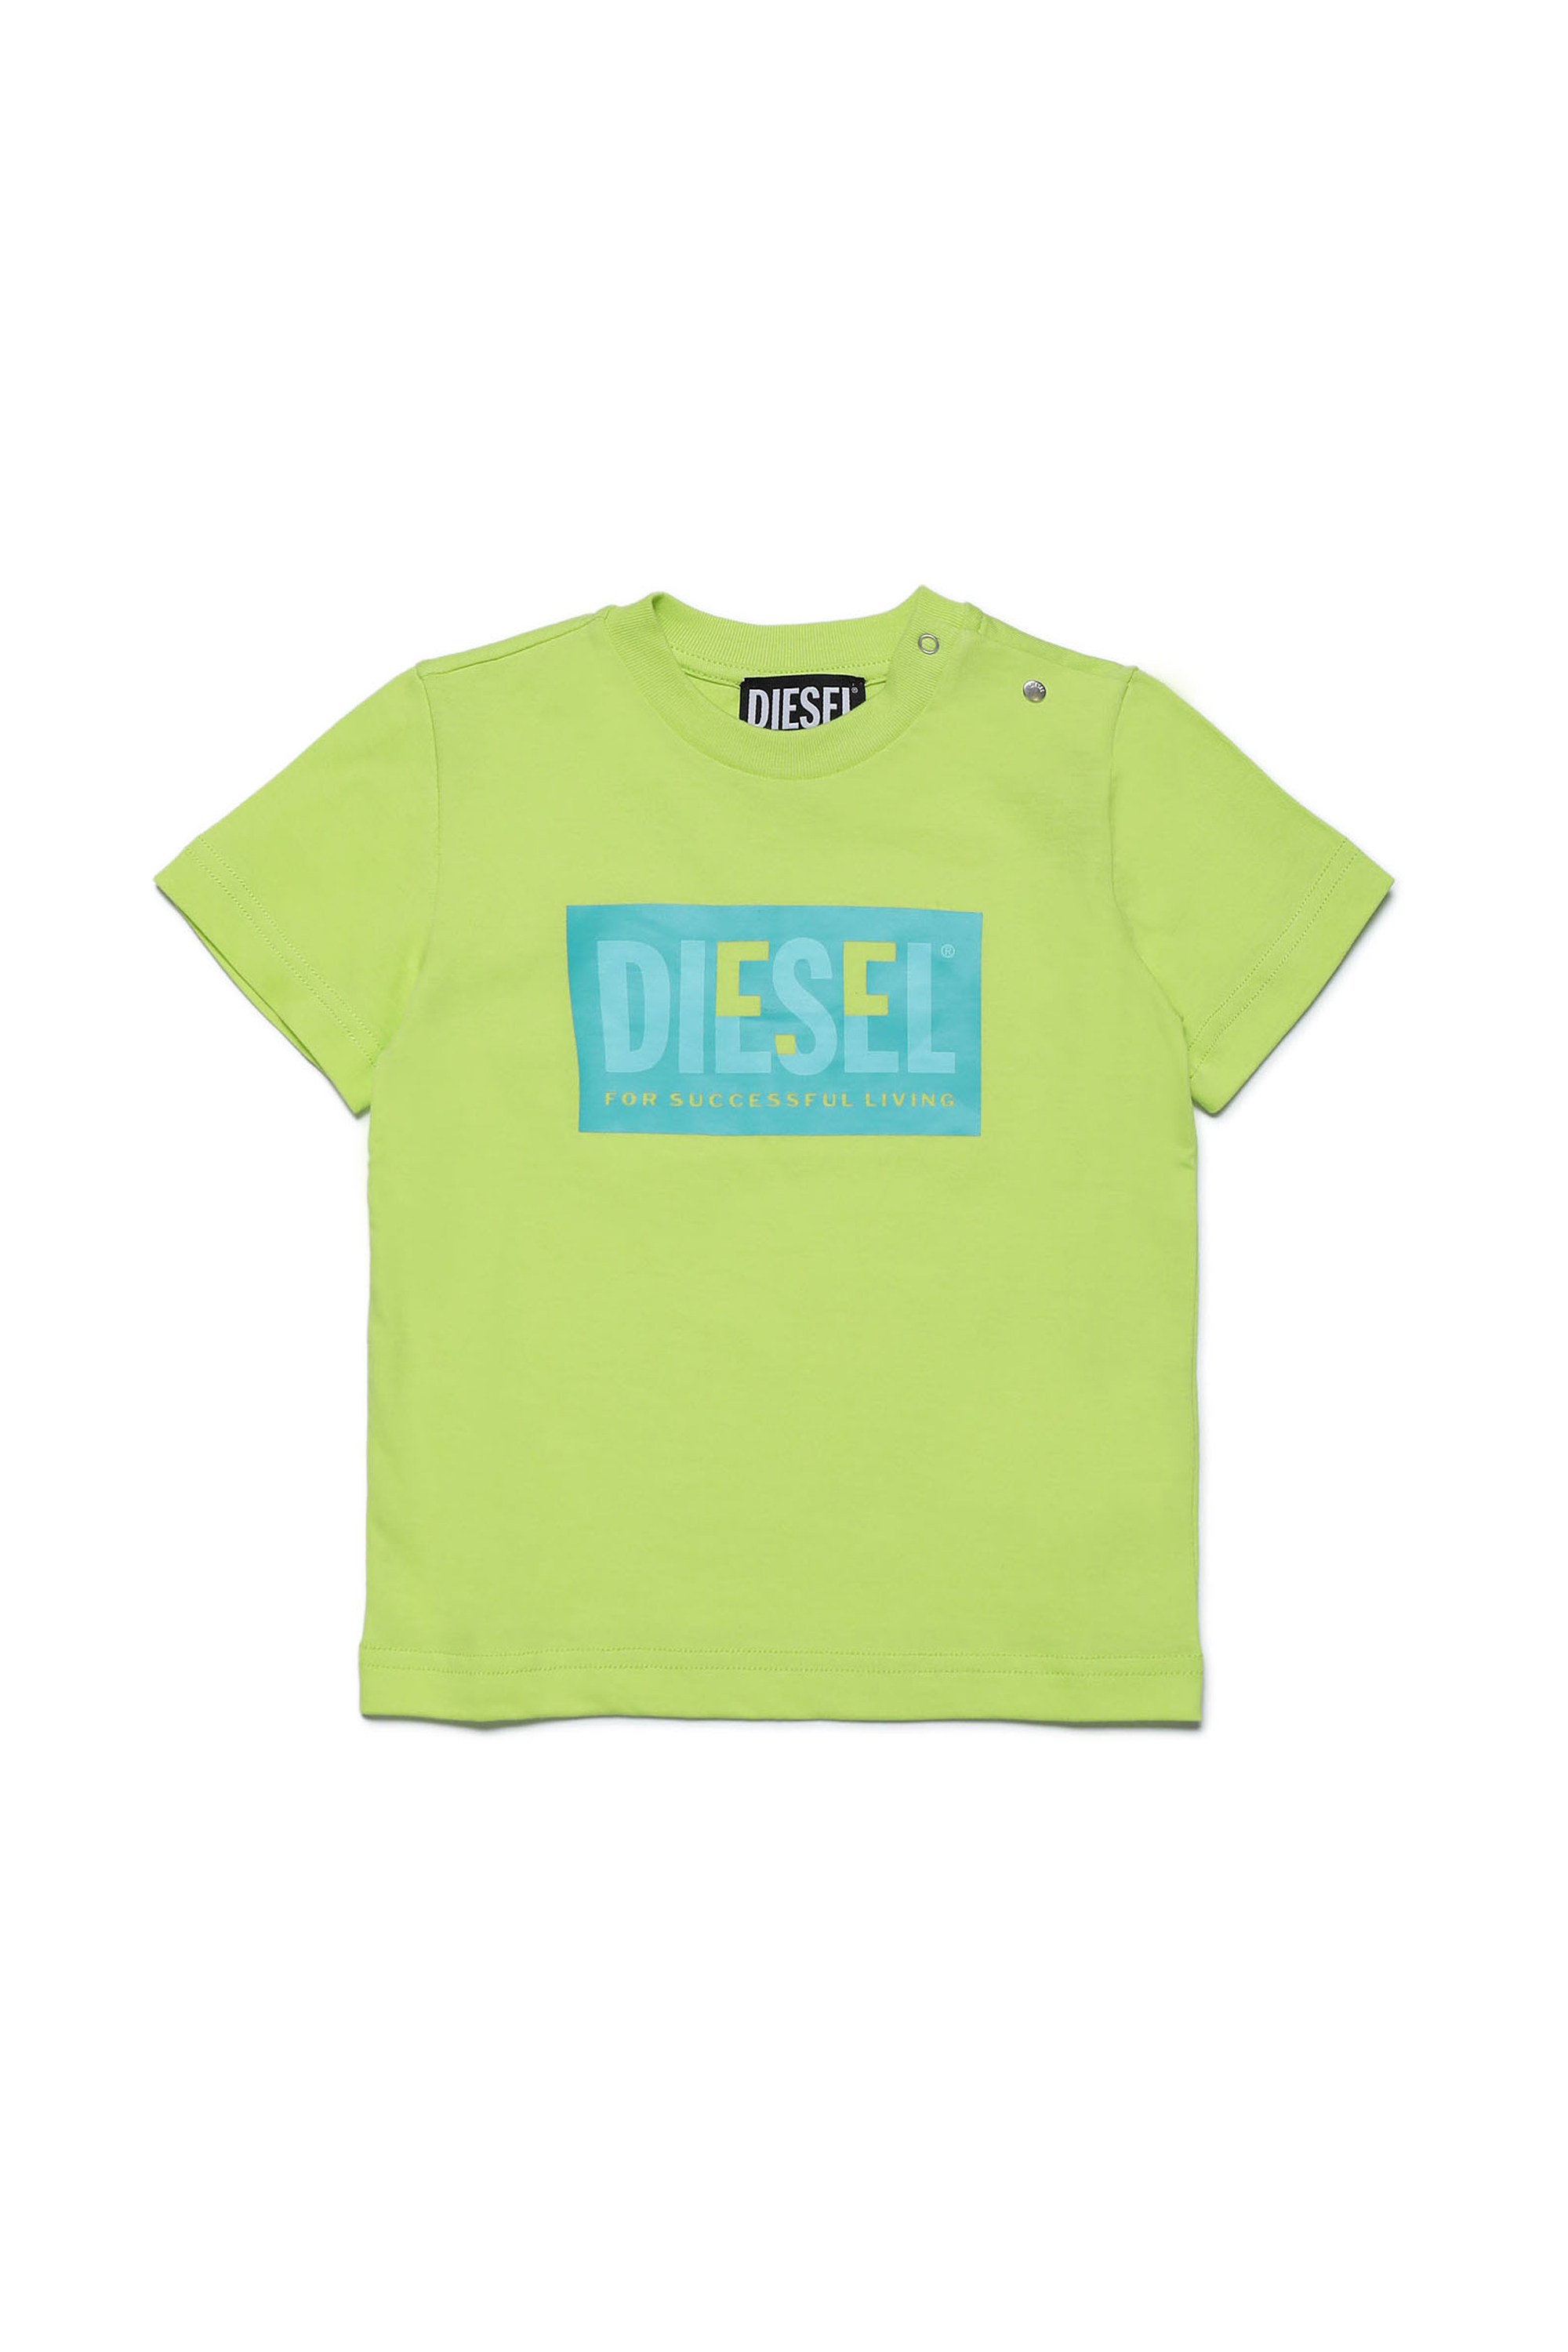 Diesel - TMILEYB, Yellow - Image 1